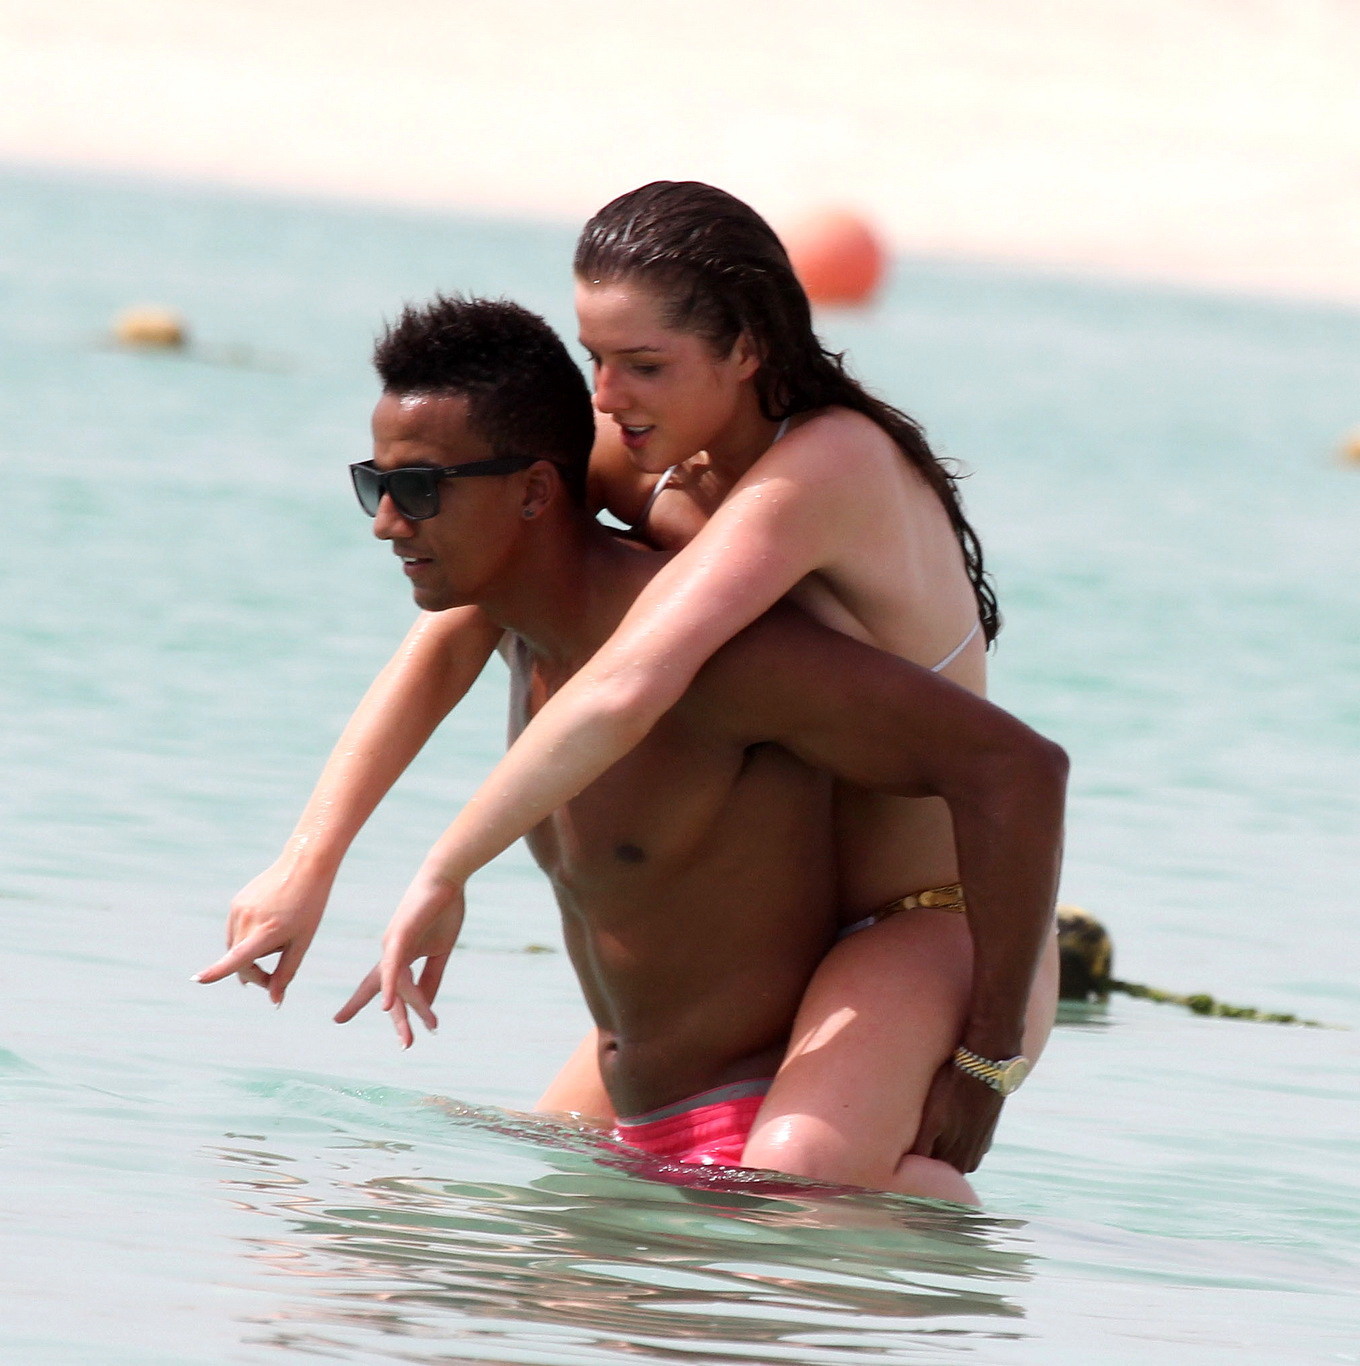 Helen flanagan en bikini avec une poitrine généreuse embrassant son petit ami sur une plage de Dubaï.
 #75258348